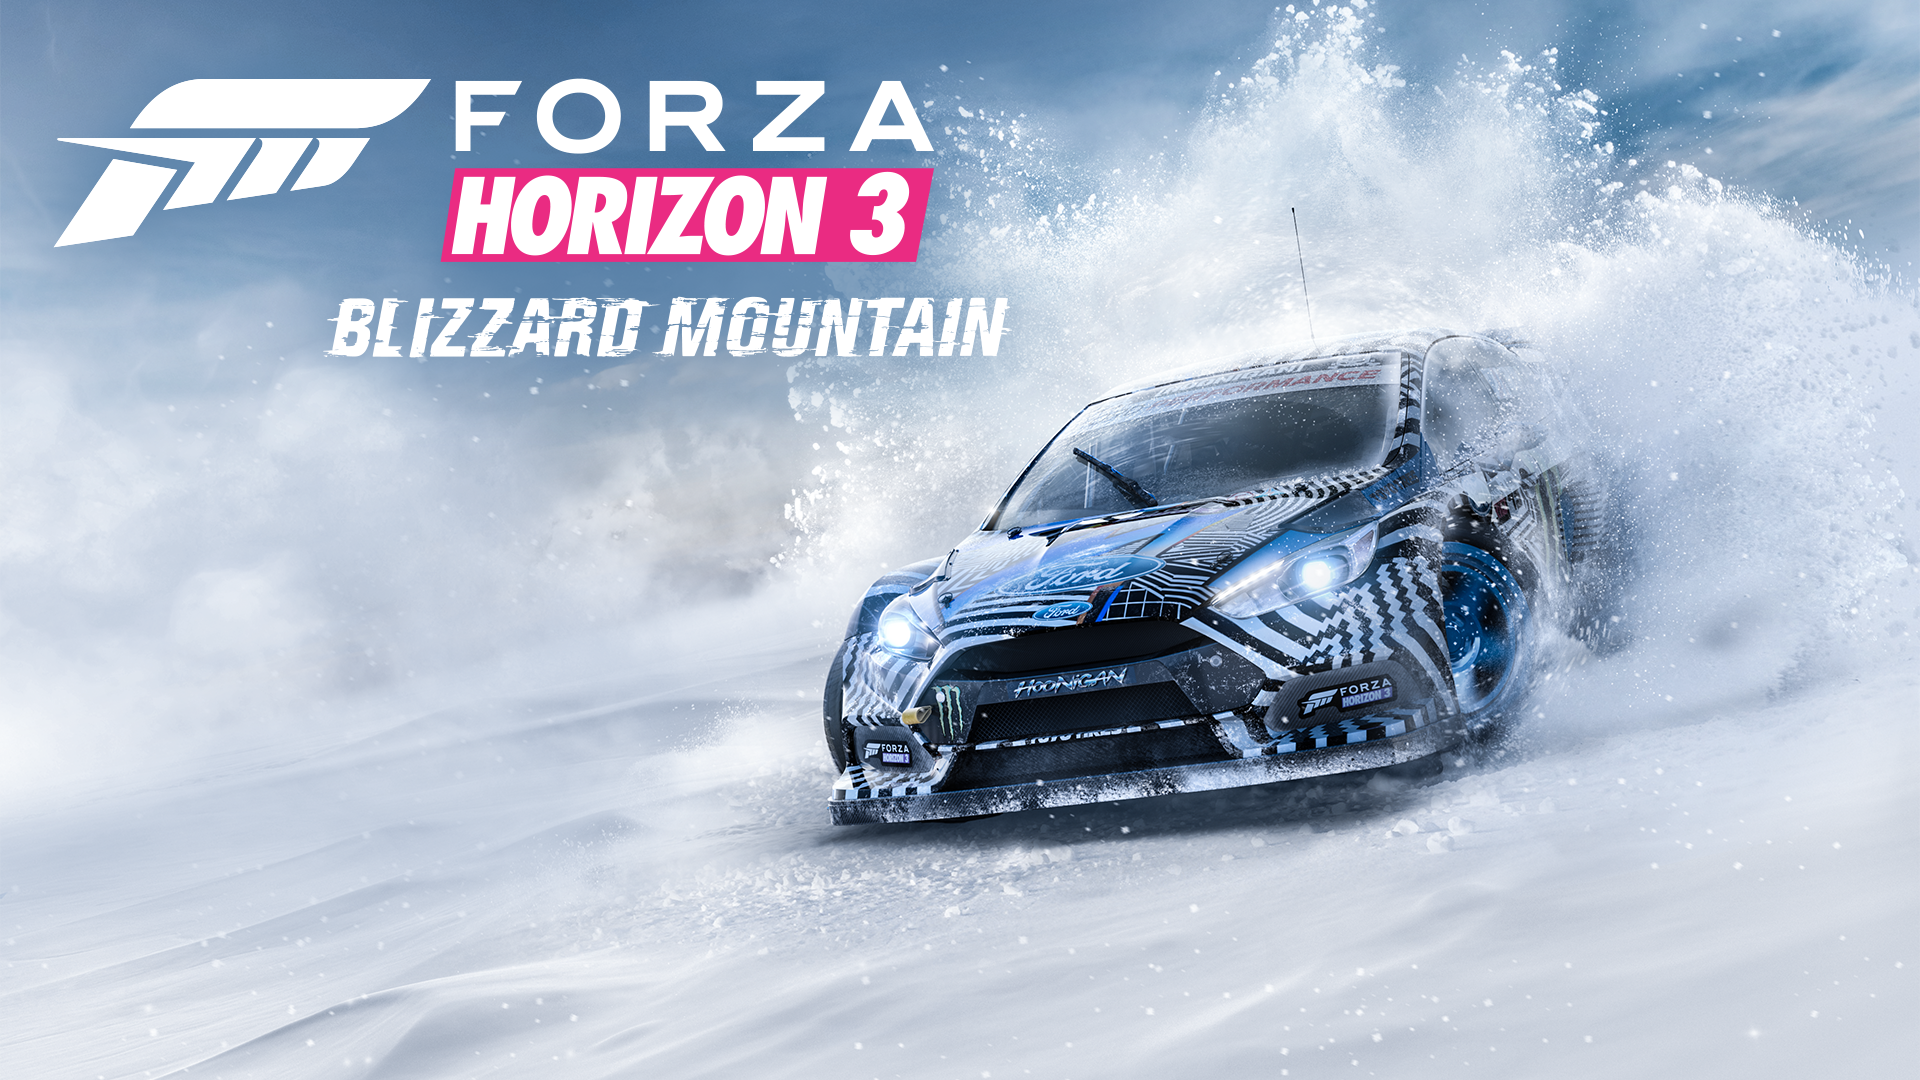 Imagen para La expansión Blizzard Mountain llega el 13 de diciembre a Forza Horizon 3